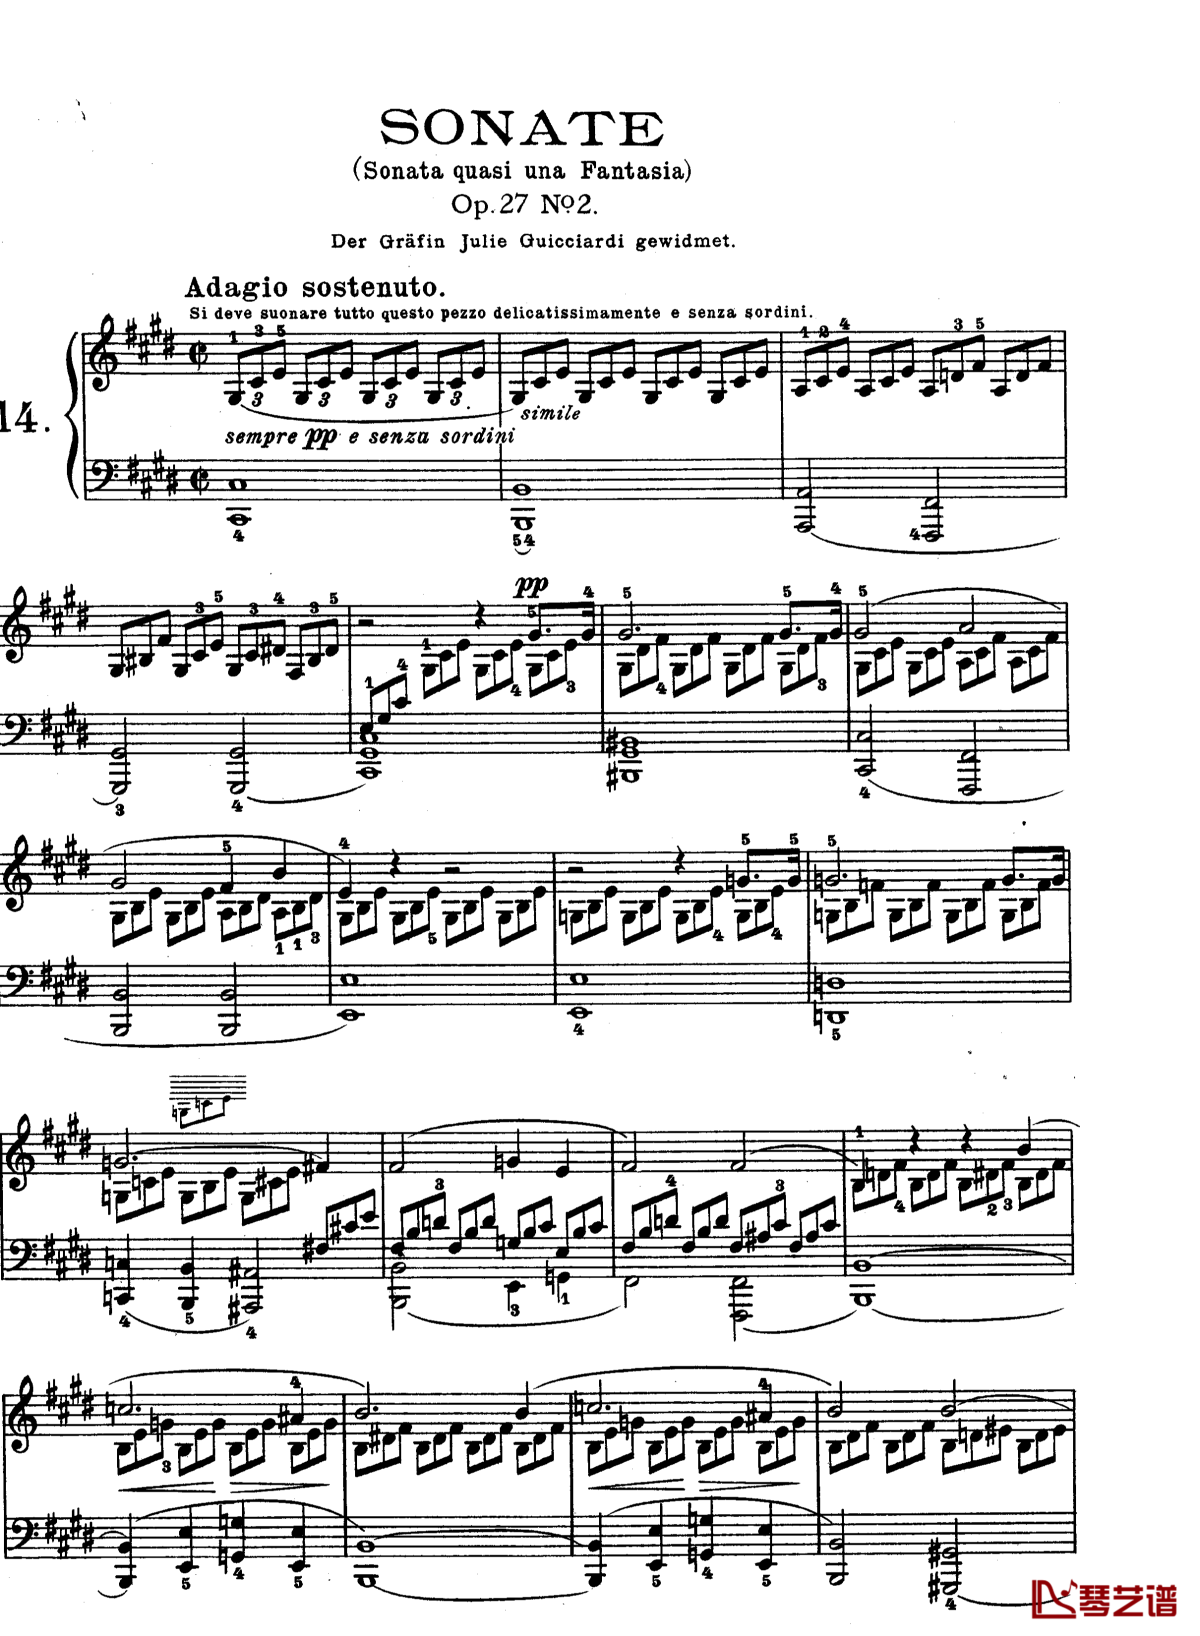 月光曲钢琴谱-第十四钢琴奏鸣曲-贝多芬